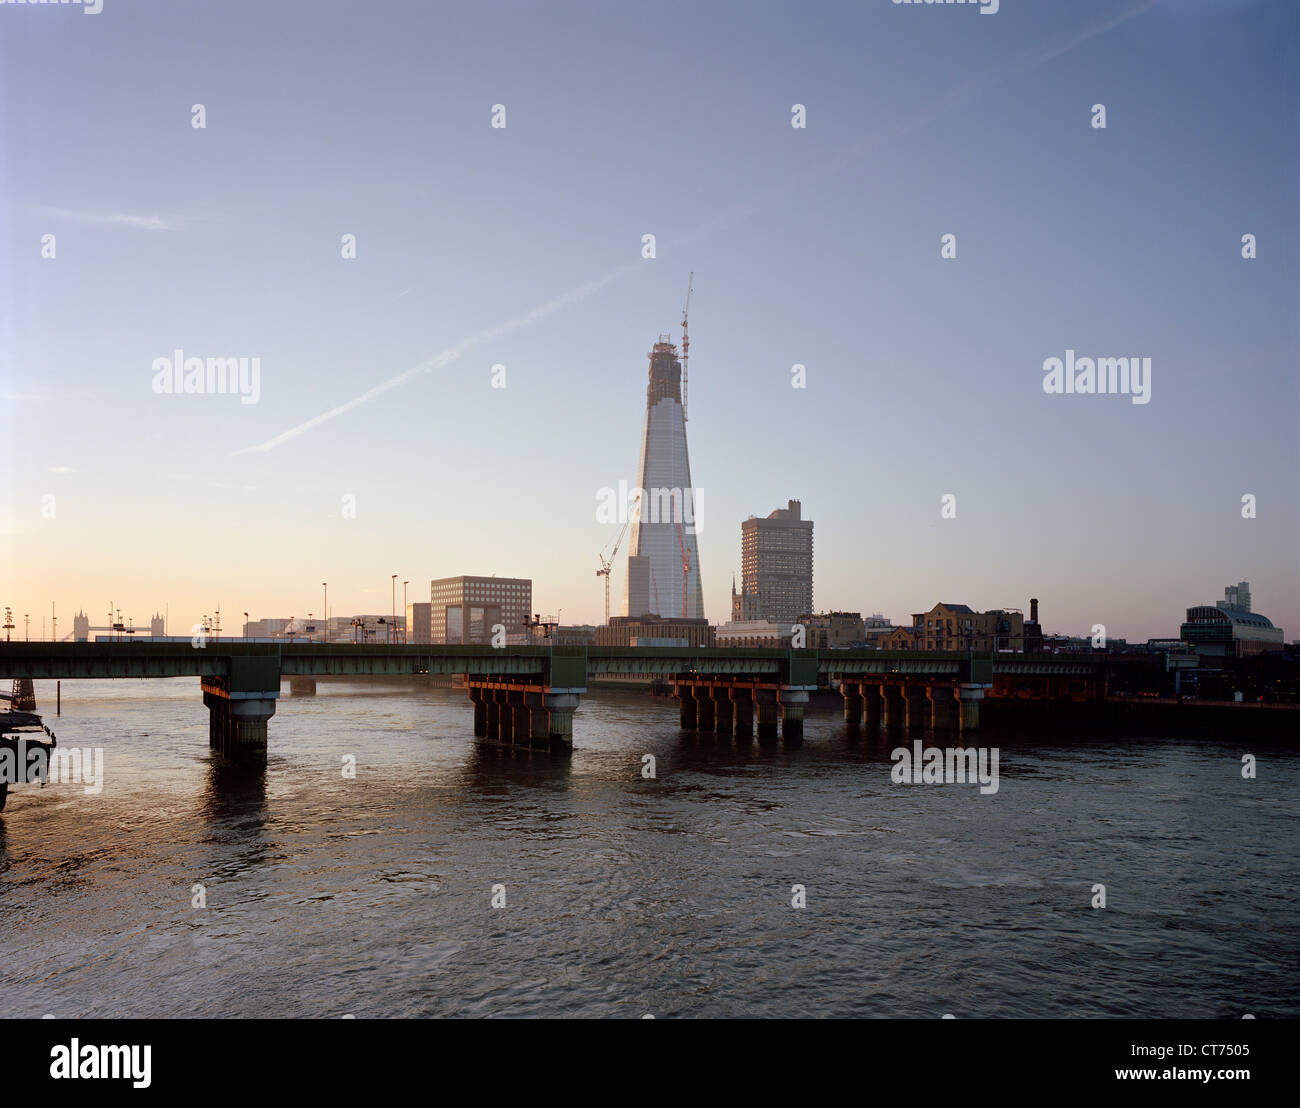 Shard, Londra, Regno Unito. Architetto: Renzo Piano Building Workshop, 2012. Alba vista dal ponte di Southwark, cattura momenta Foto Stock